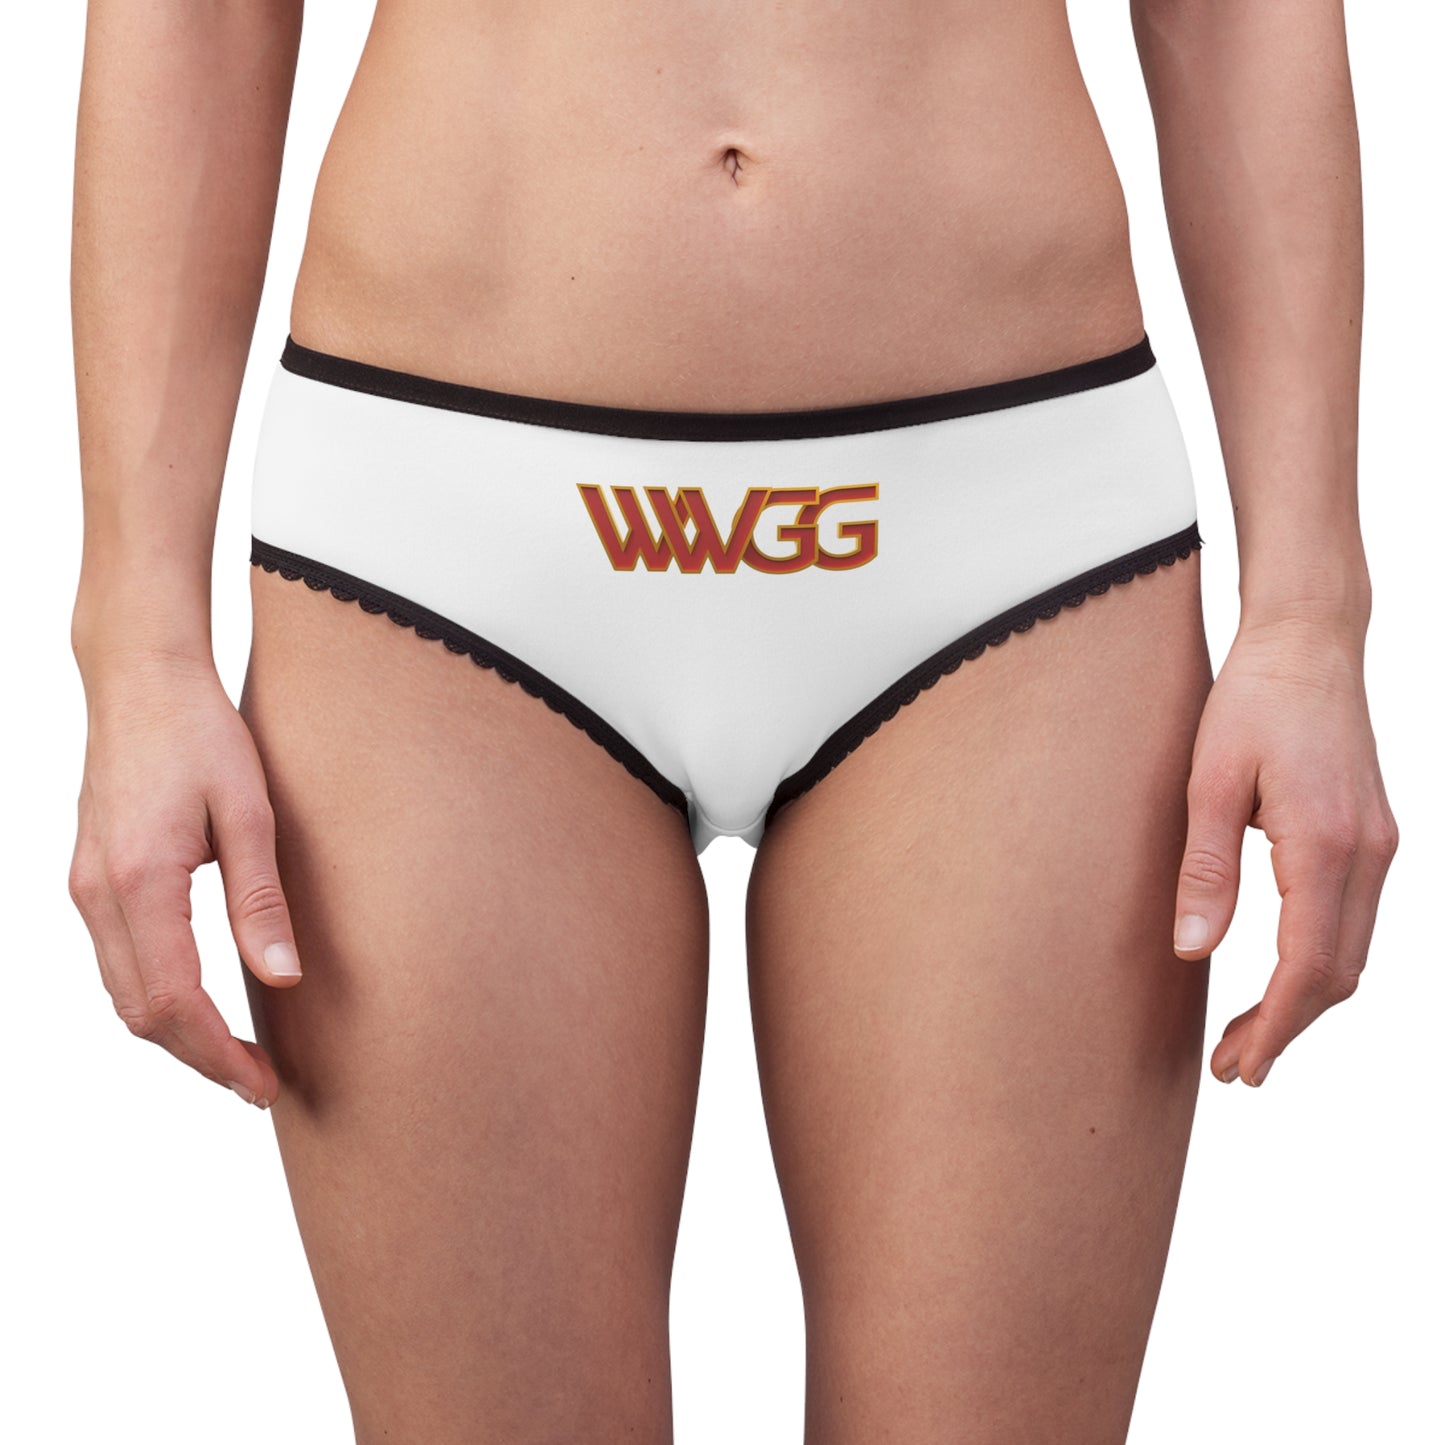 WWGG + WWBG Women's Briefs